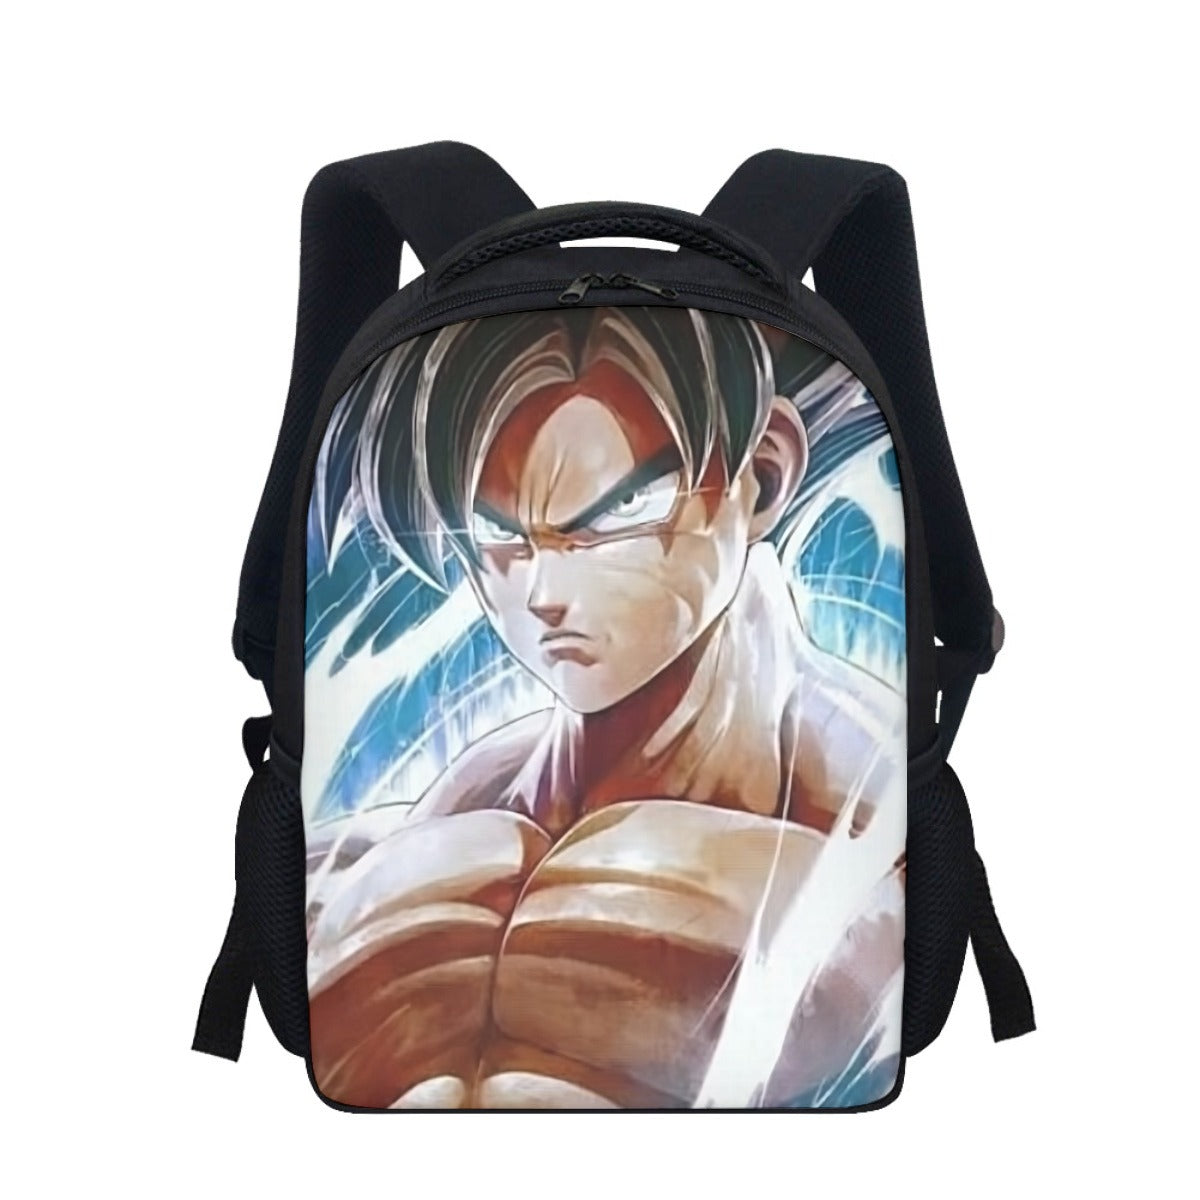 Dragon Ball Z Backpack Cartoon Shoulder Bag Pencilcase Large